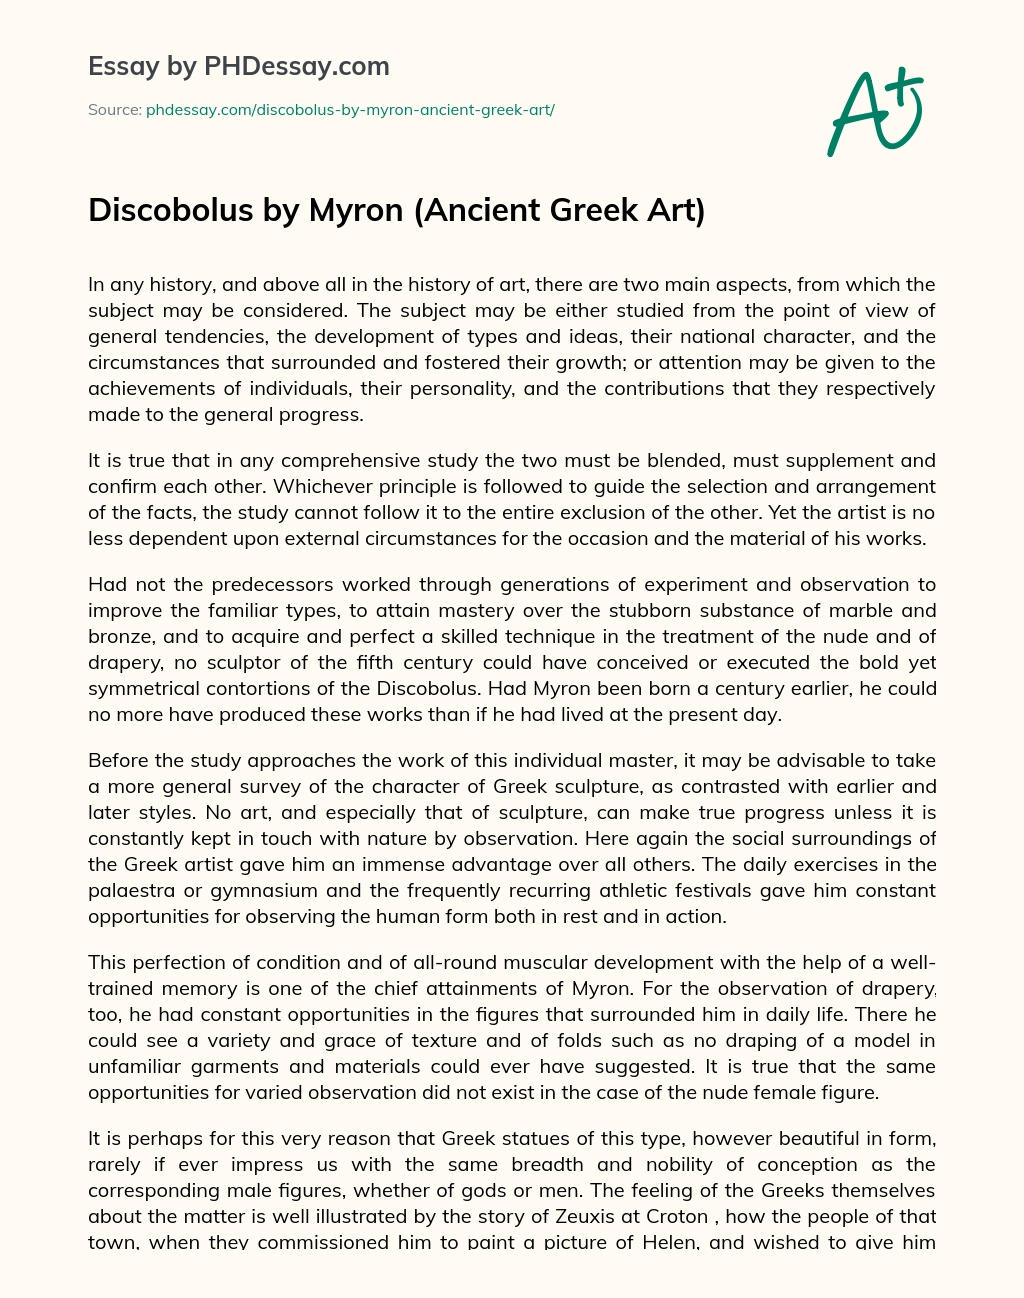 Discobolus by Myron (Ancient Greek Art) essay